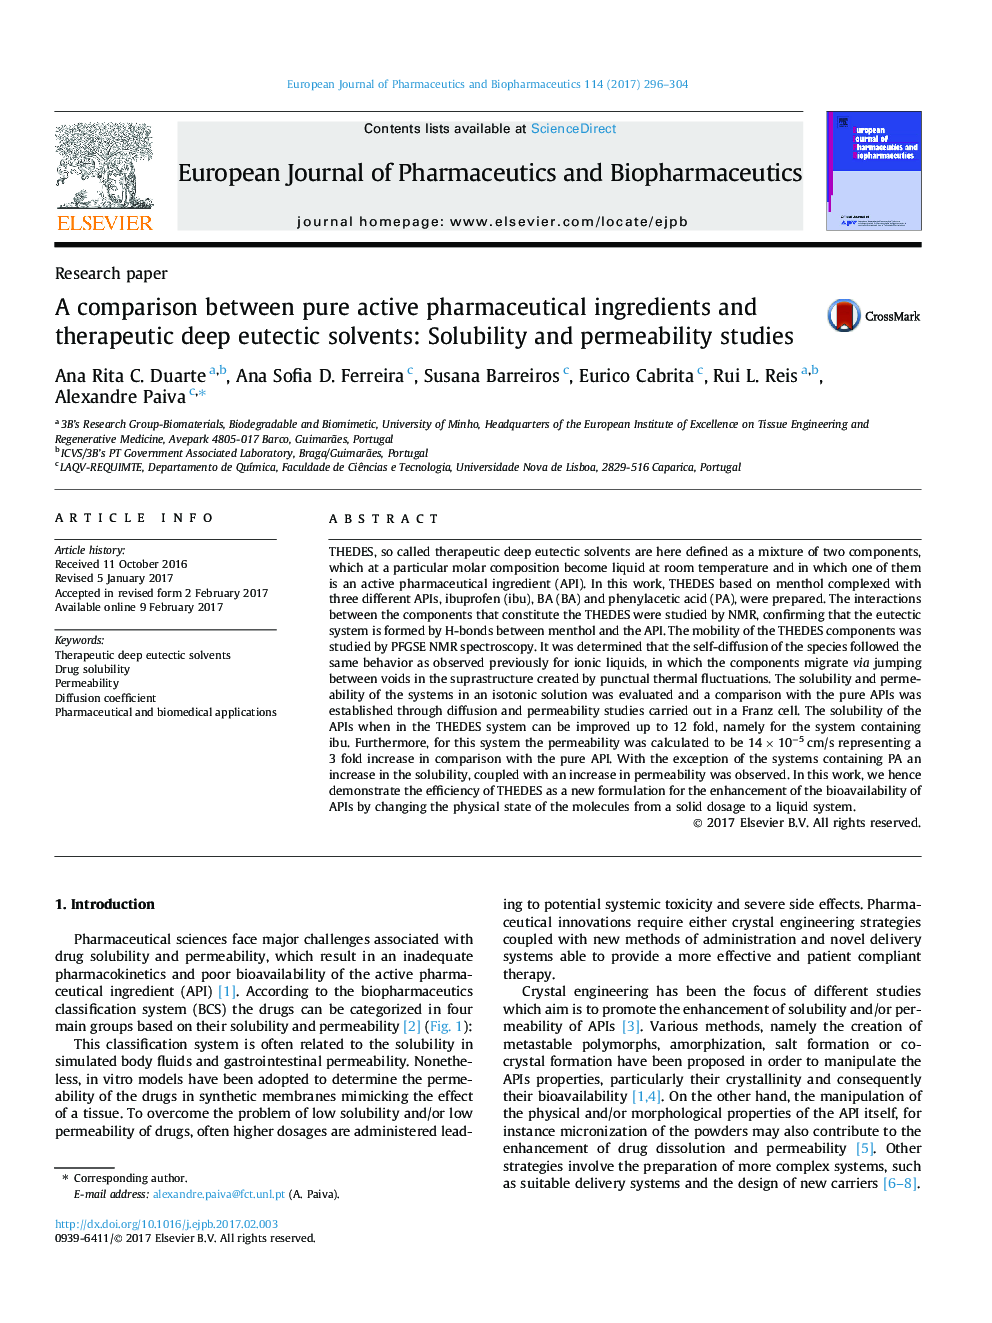 مقایسه مواد داروی فعال خالص و حلال های ائوتستیک عمیق دریافت کننده: مطالعات حلالیت و نفوذپذیری 